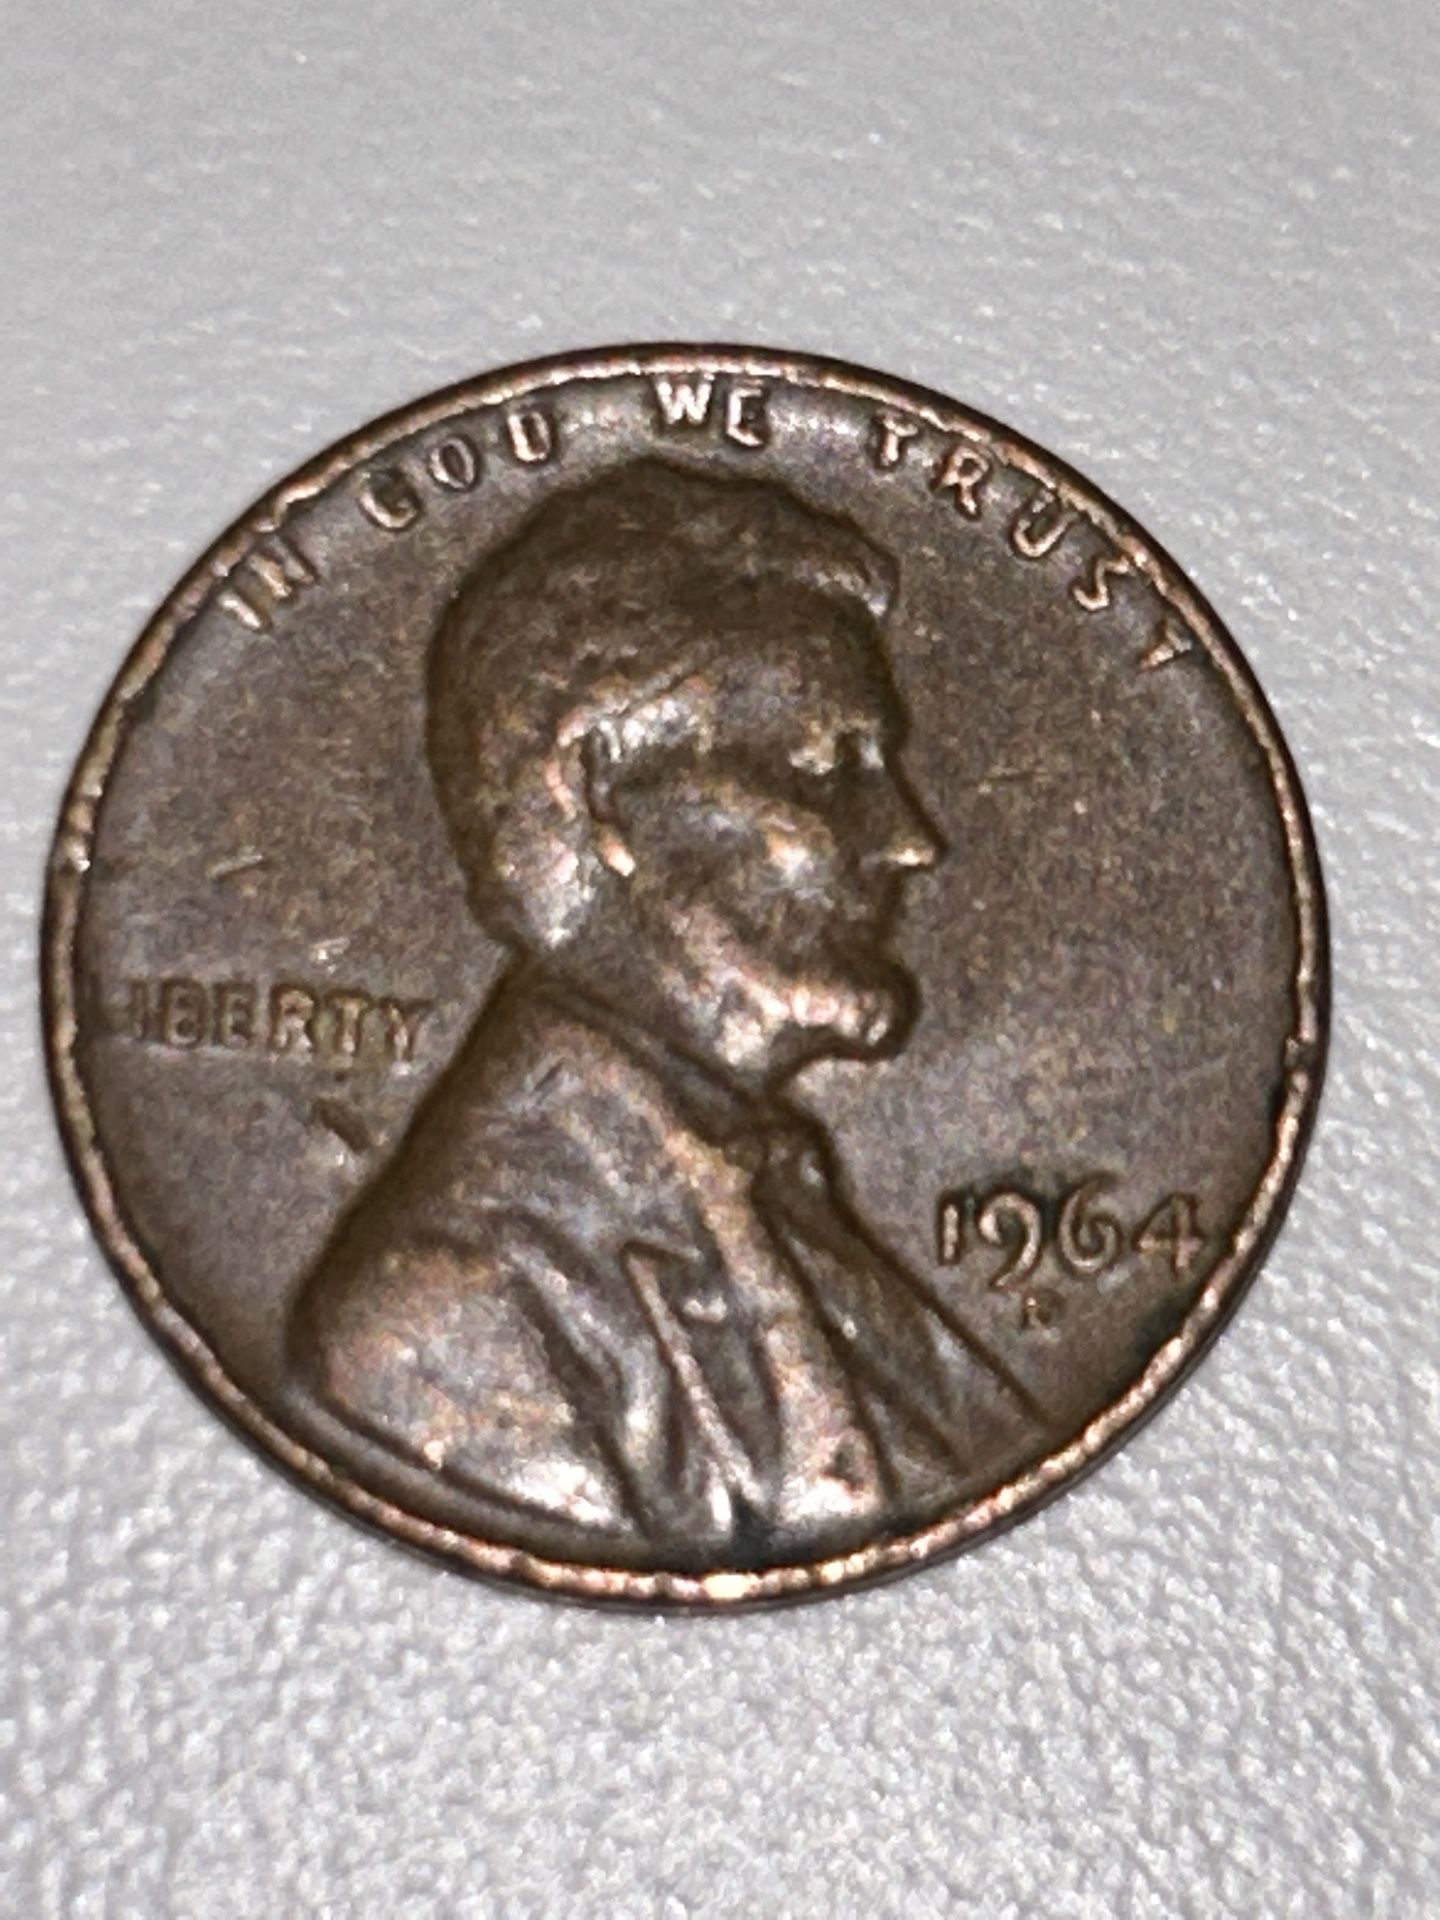 1964 D Penny